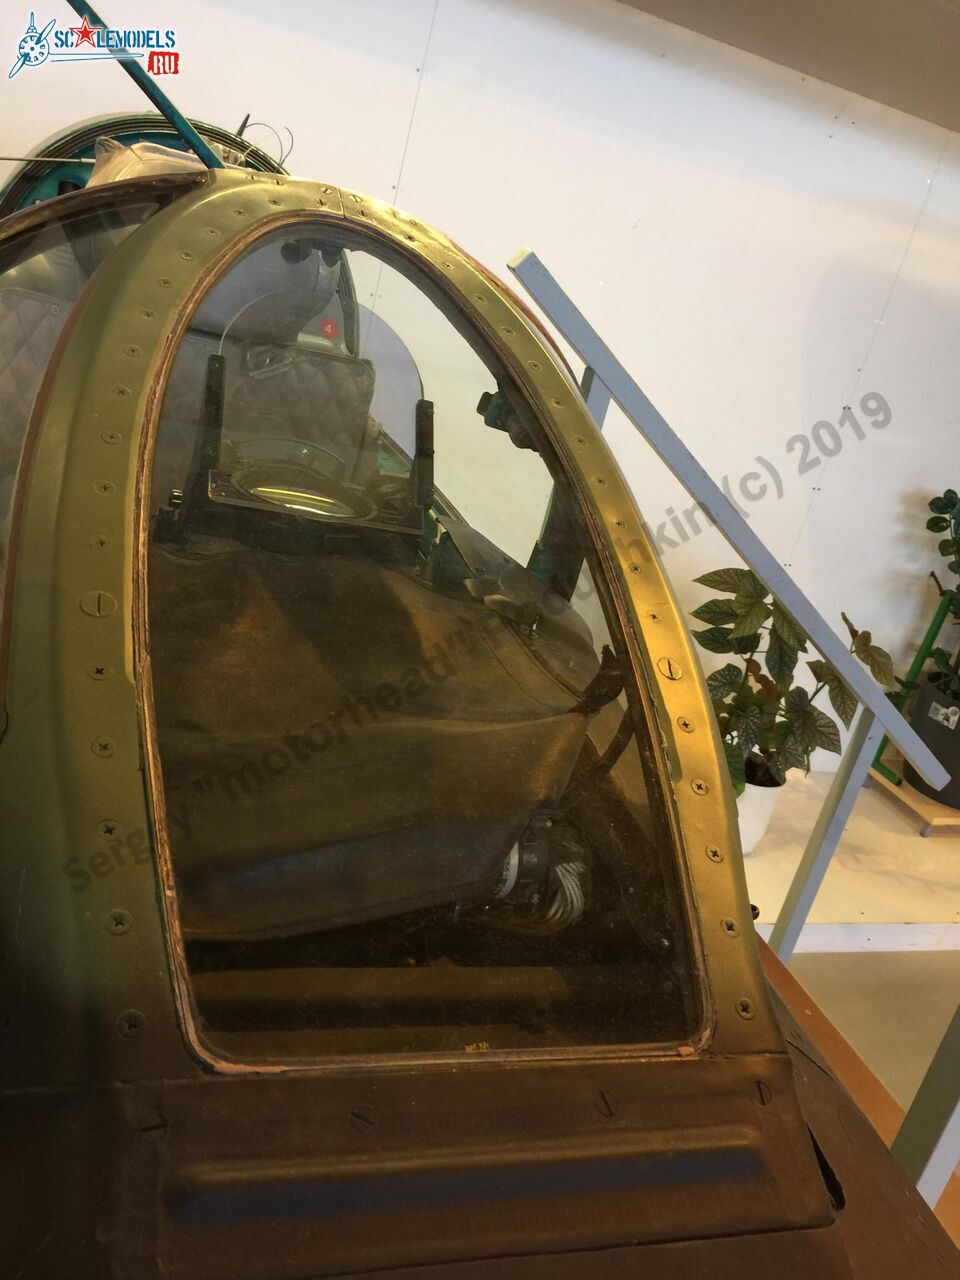 MiG-21bis_cockpit_12.jpg